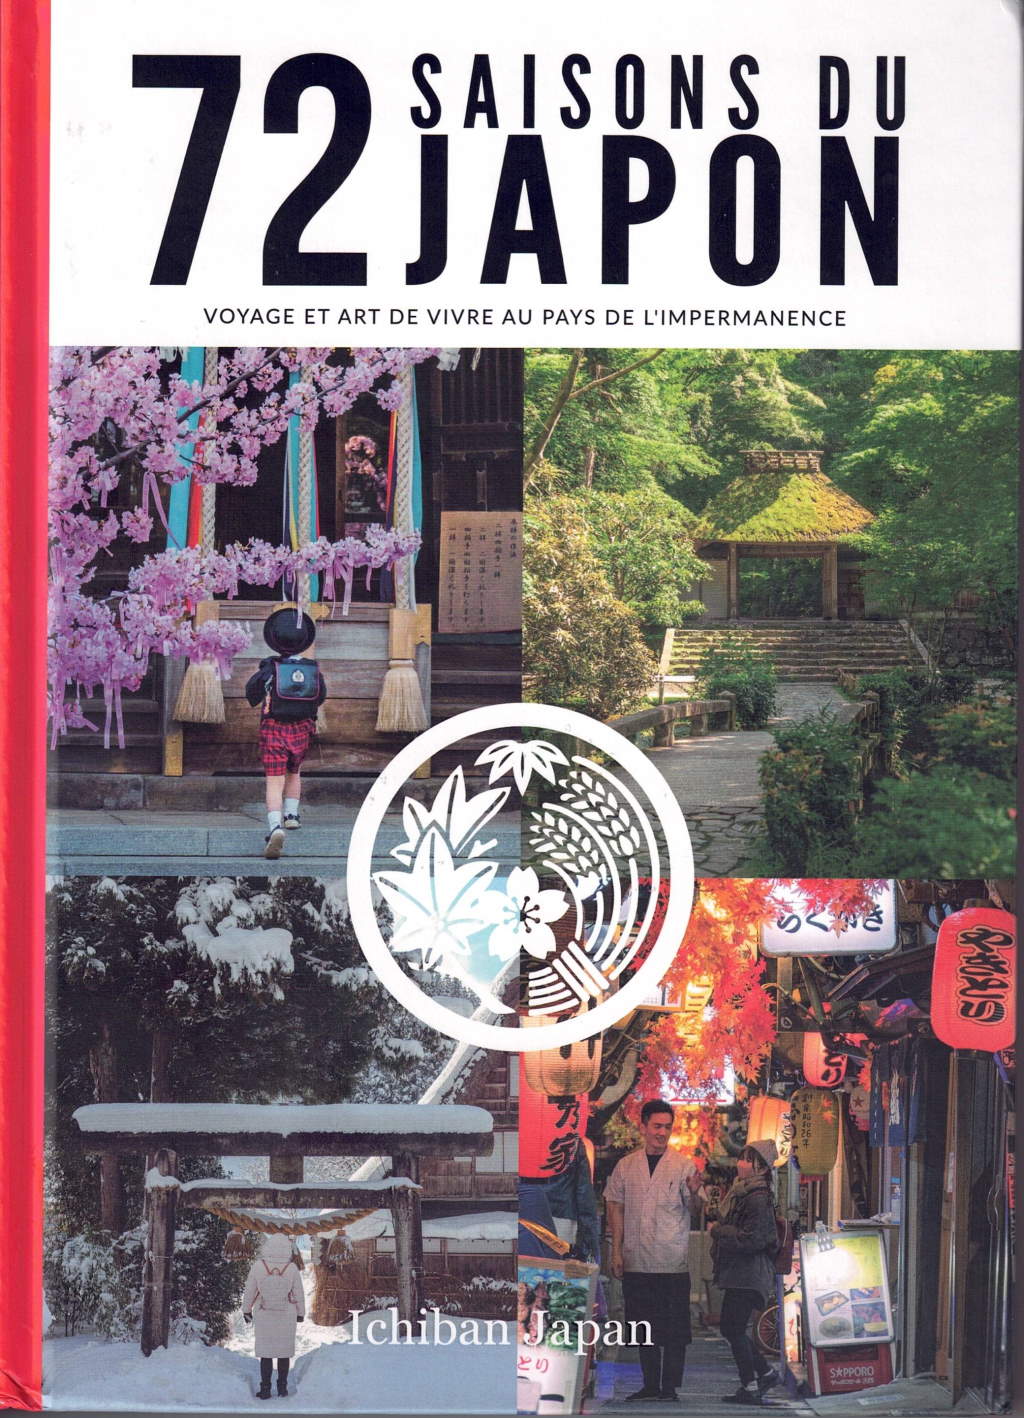 72 saisons du Japon (Français language, 2022, Ichiban Japan)